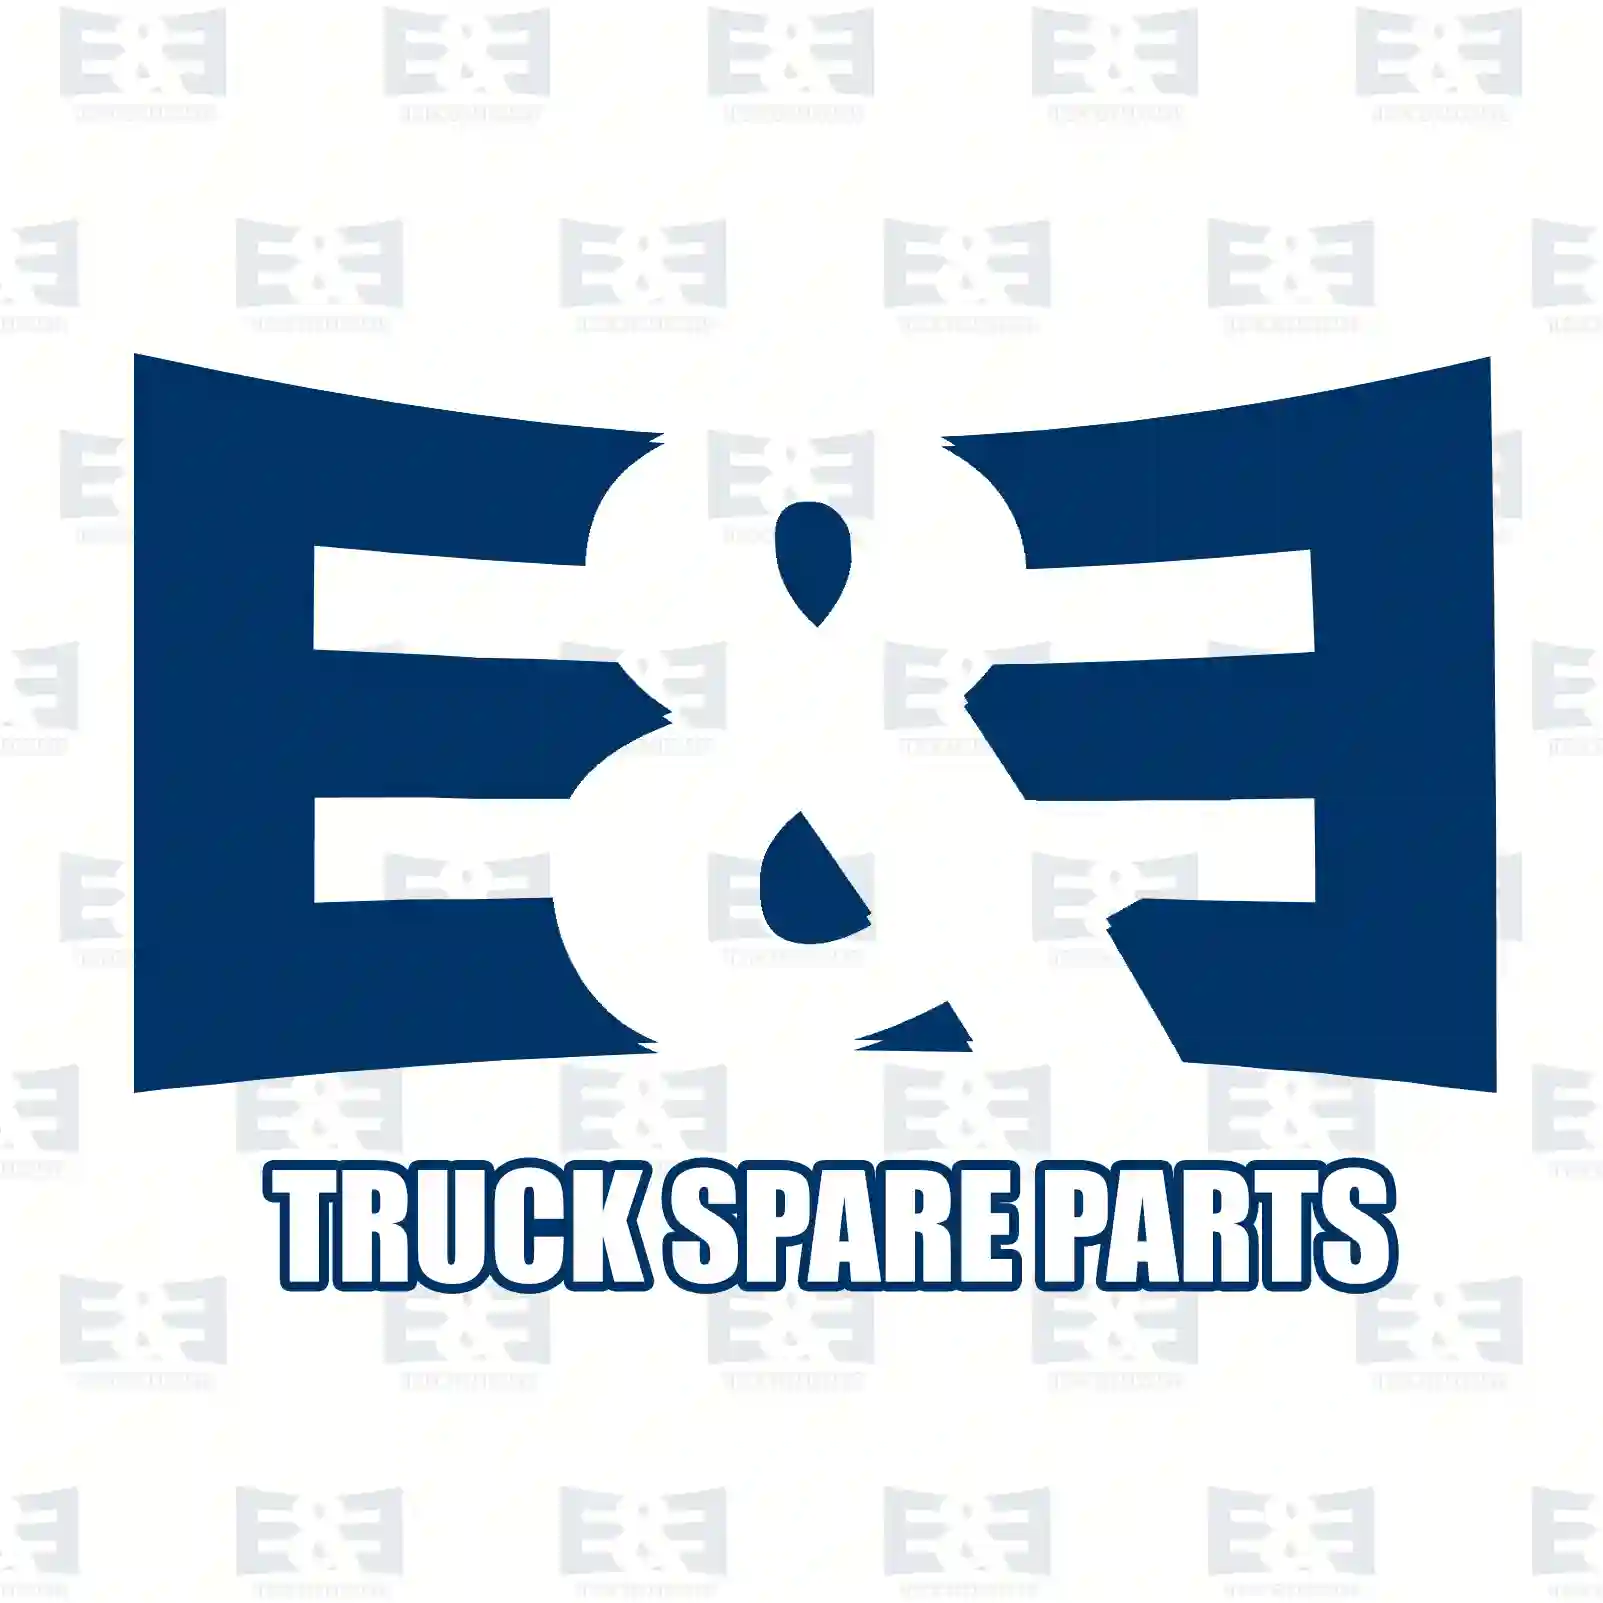 Gear shift lever valve, 2E2278485, 0035454707, 0045459607, 9415400044, 9415400545, ZG30544-0008 ||  2E2278485 E&E Truck Spare Parts | Truck Spare Parts, Auotomotive Spare Parts Gear shift lever valve, 2E2278485, 0035454707, 0045459607, 9415400044, 9415400545, ZG30544-0008 ||  2E2278485 E&E Truck Spare Parts | Truck Spare Parts, Auotomotive Spare Parts